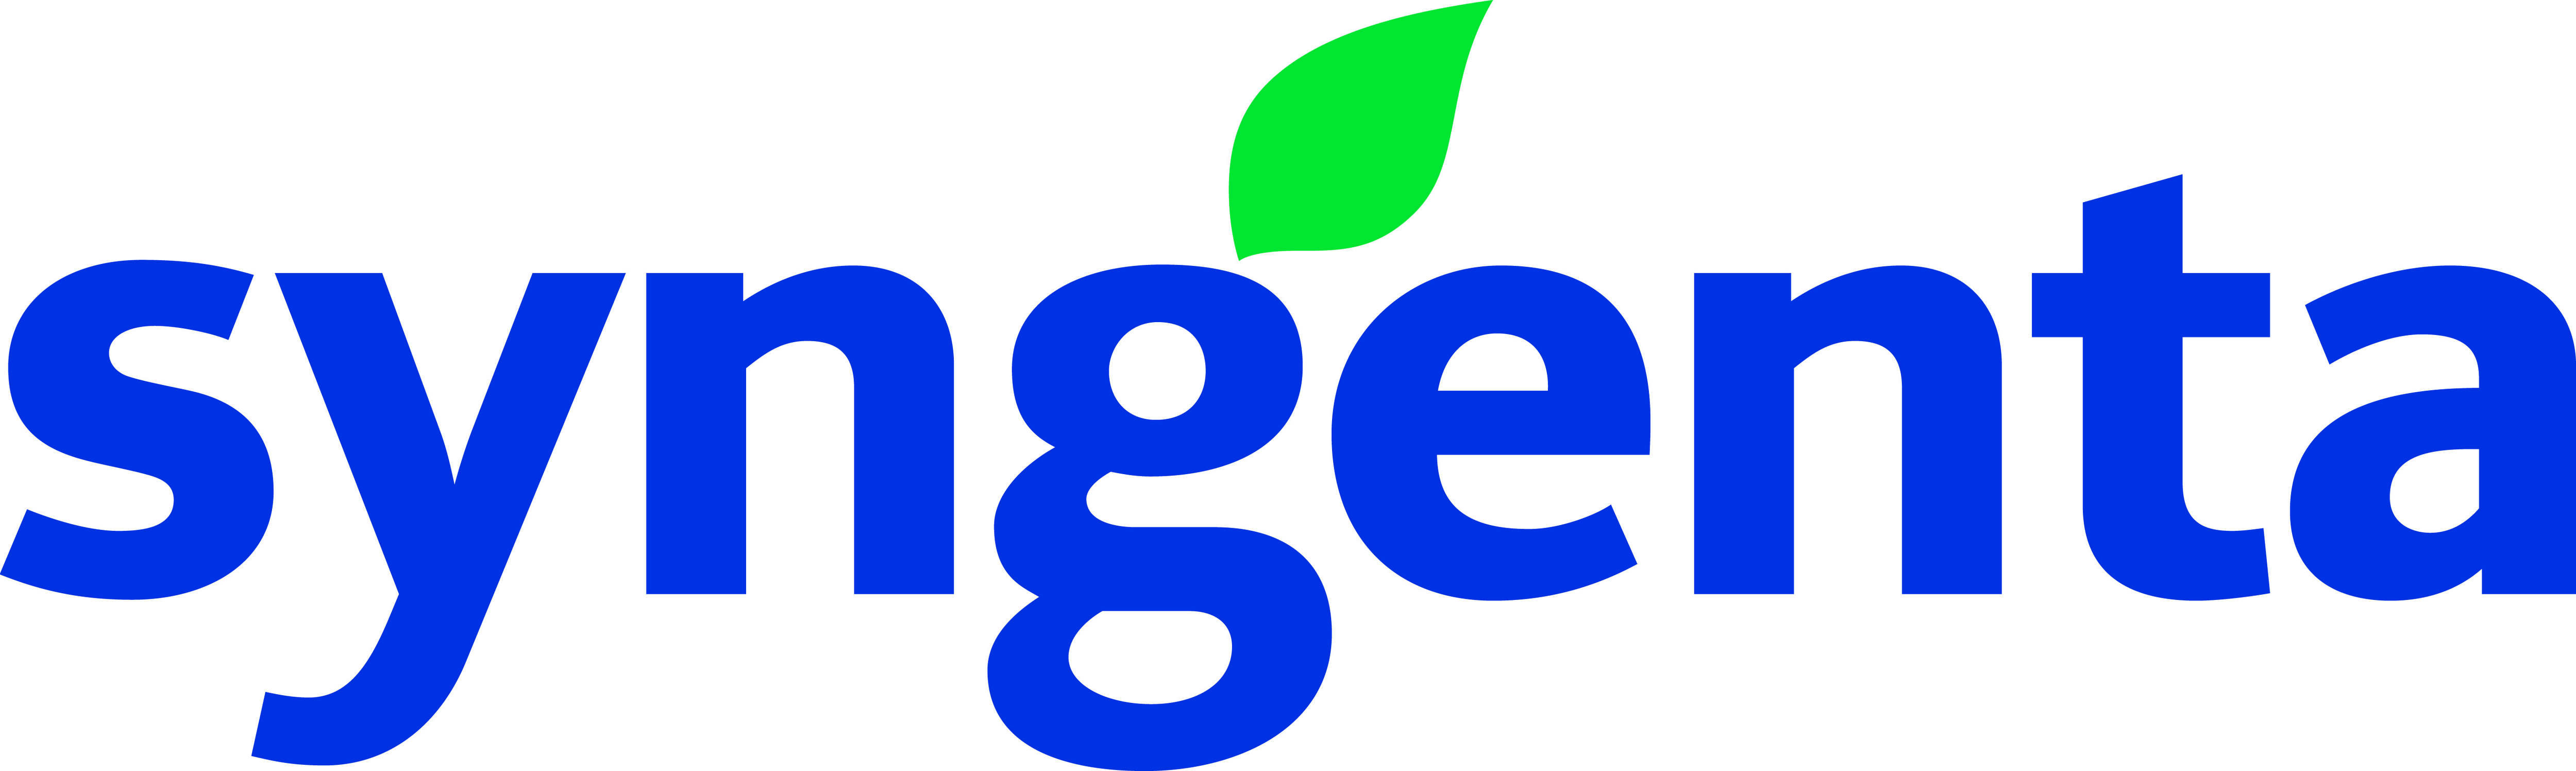 Syngenta Canada Inc.